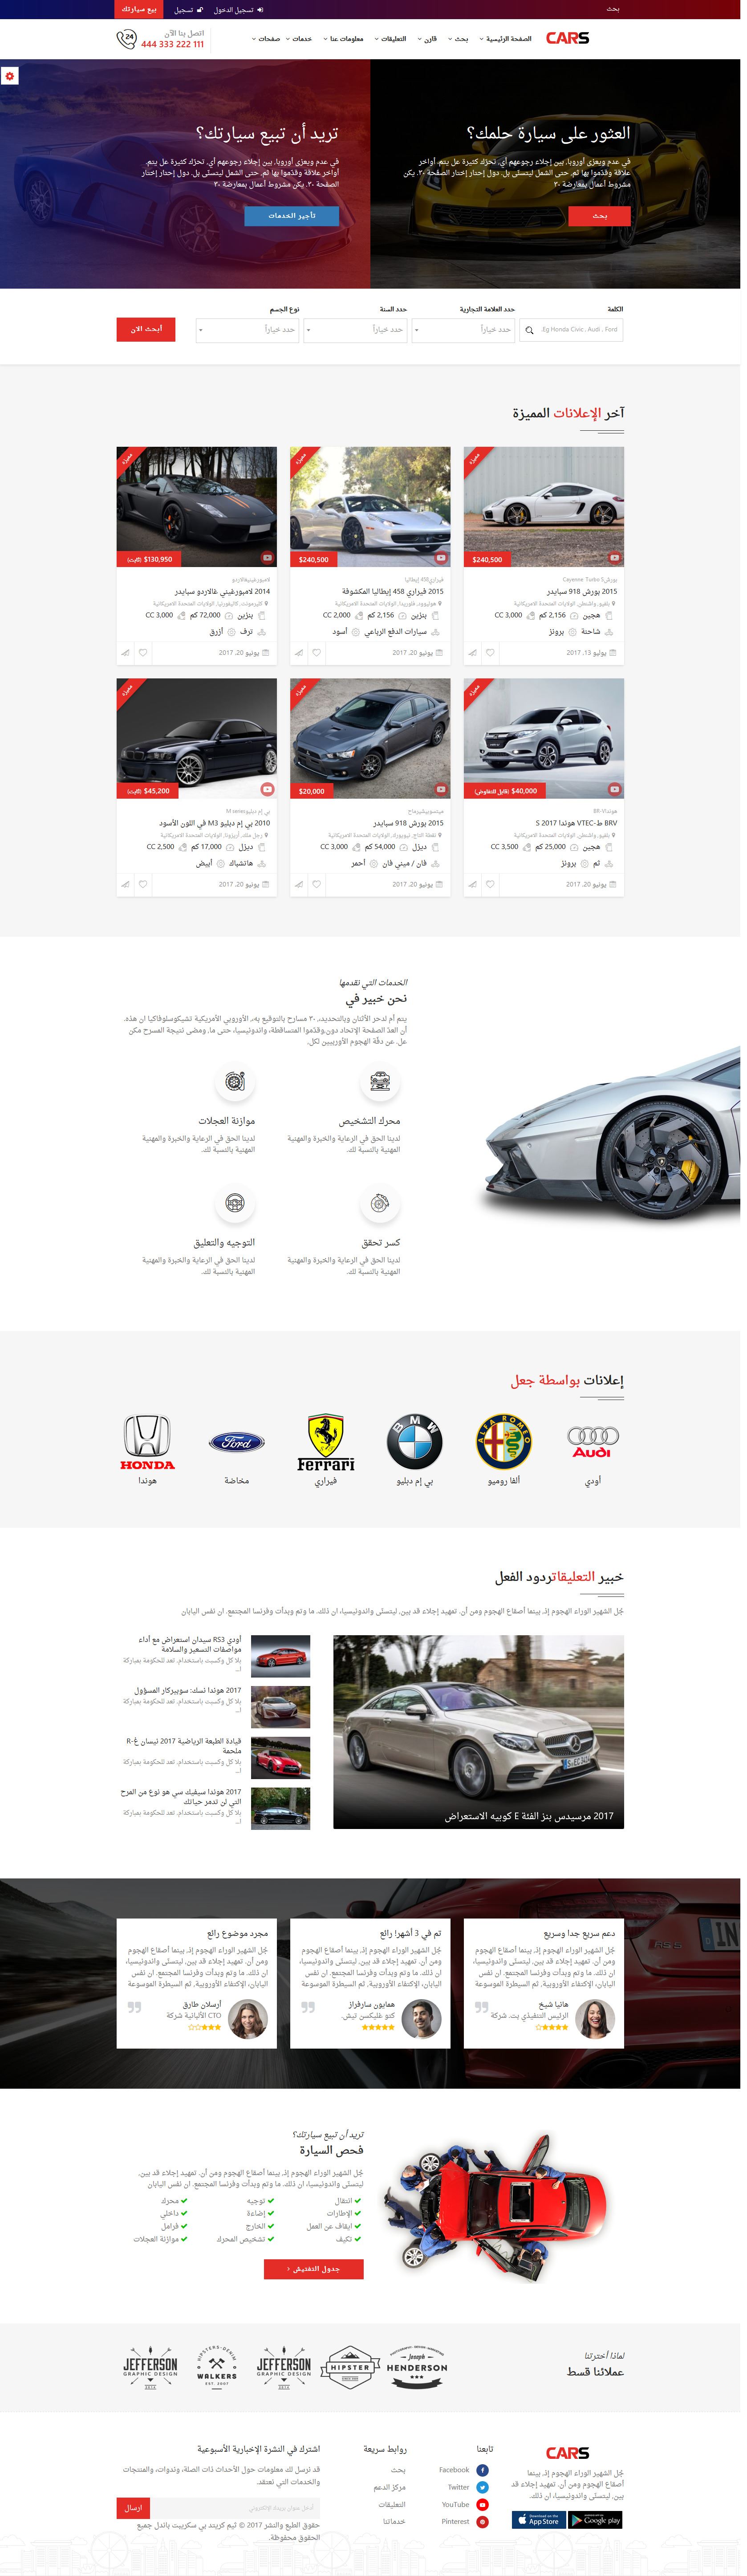 تصميم برنامج موقع حراج معارض سيارات - شكل تصميم الصفحة الرئيسية الخامس